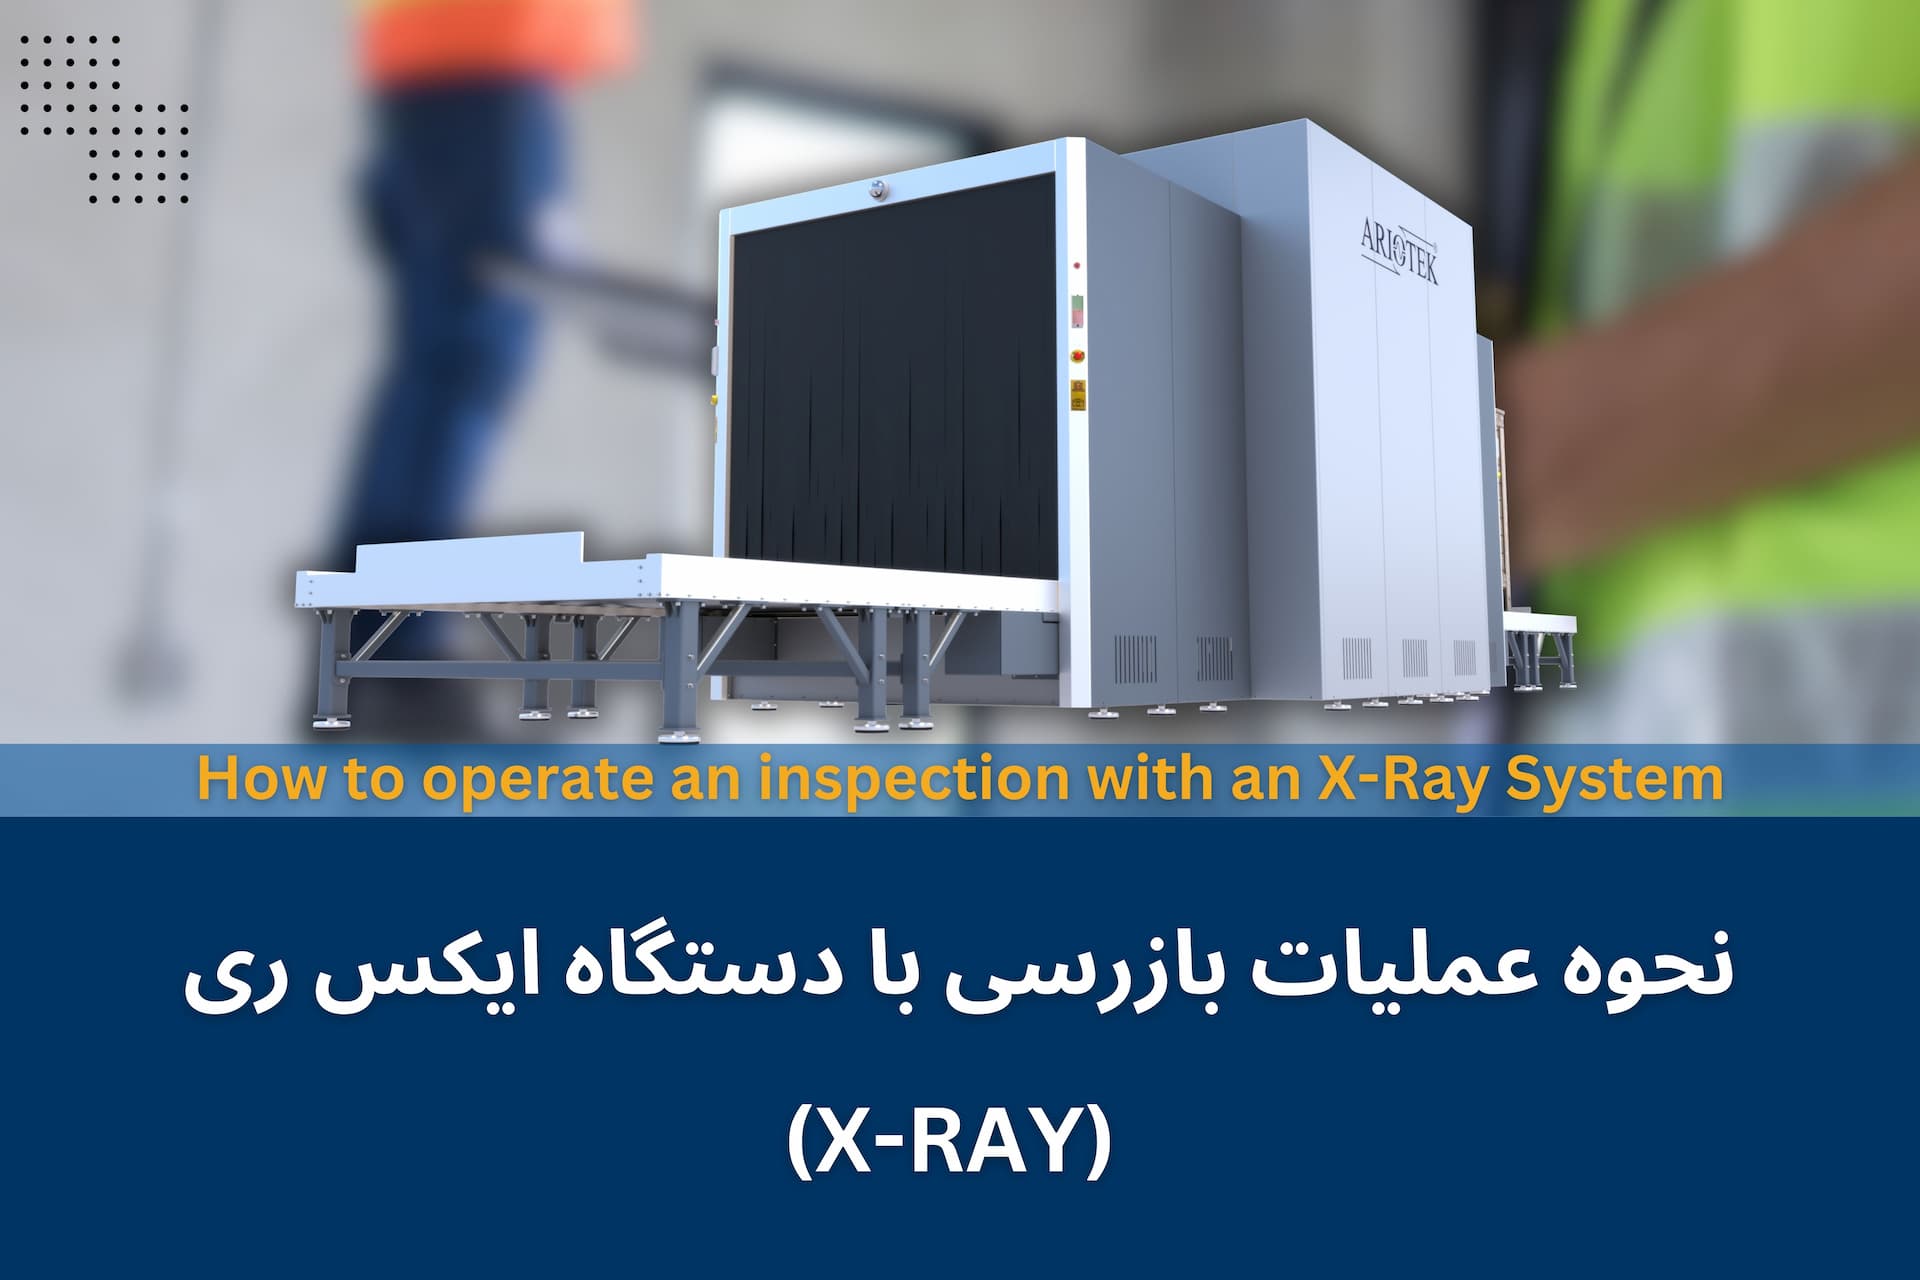 نحوه عملیات بازرسی با دستگاه ایکس ری (X-RAY)